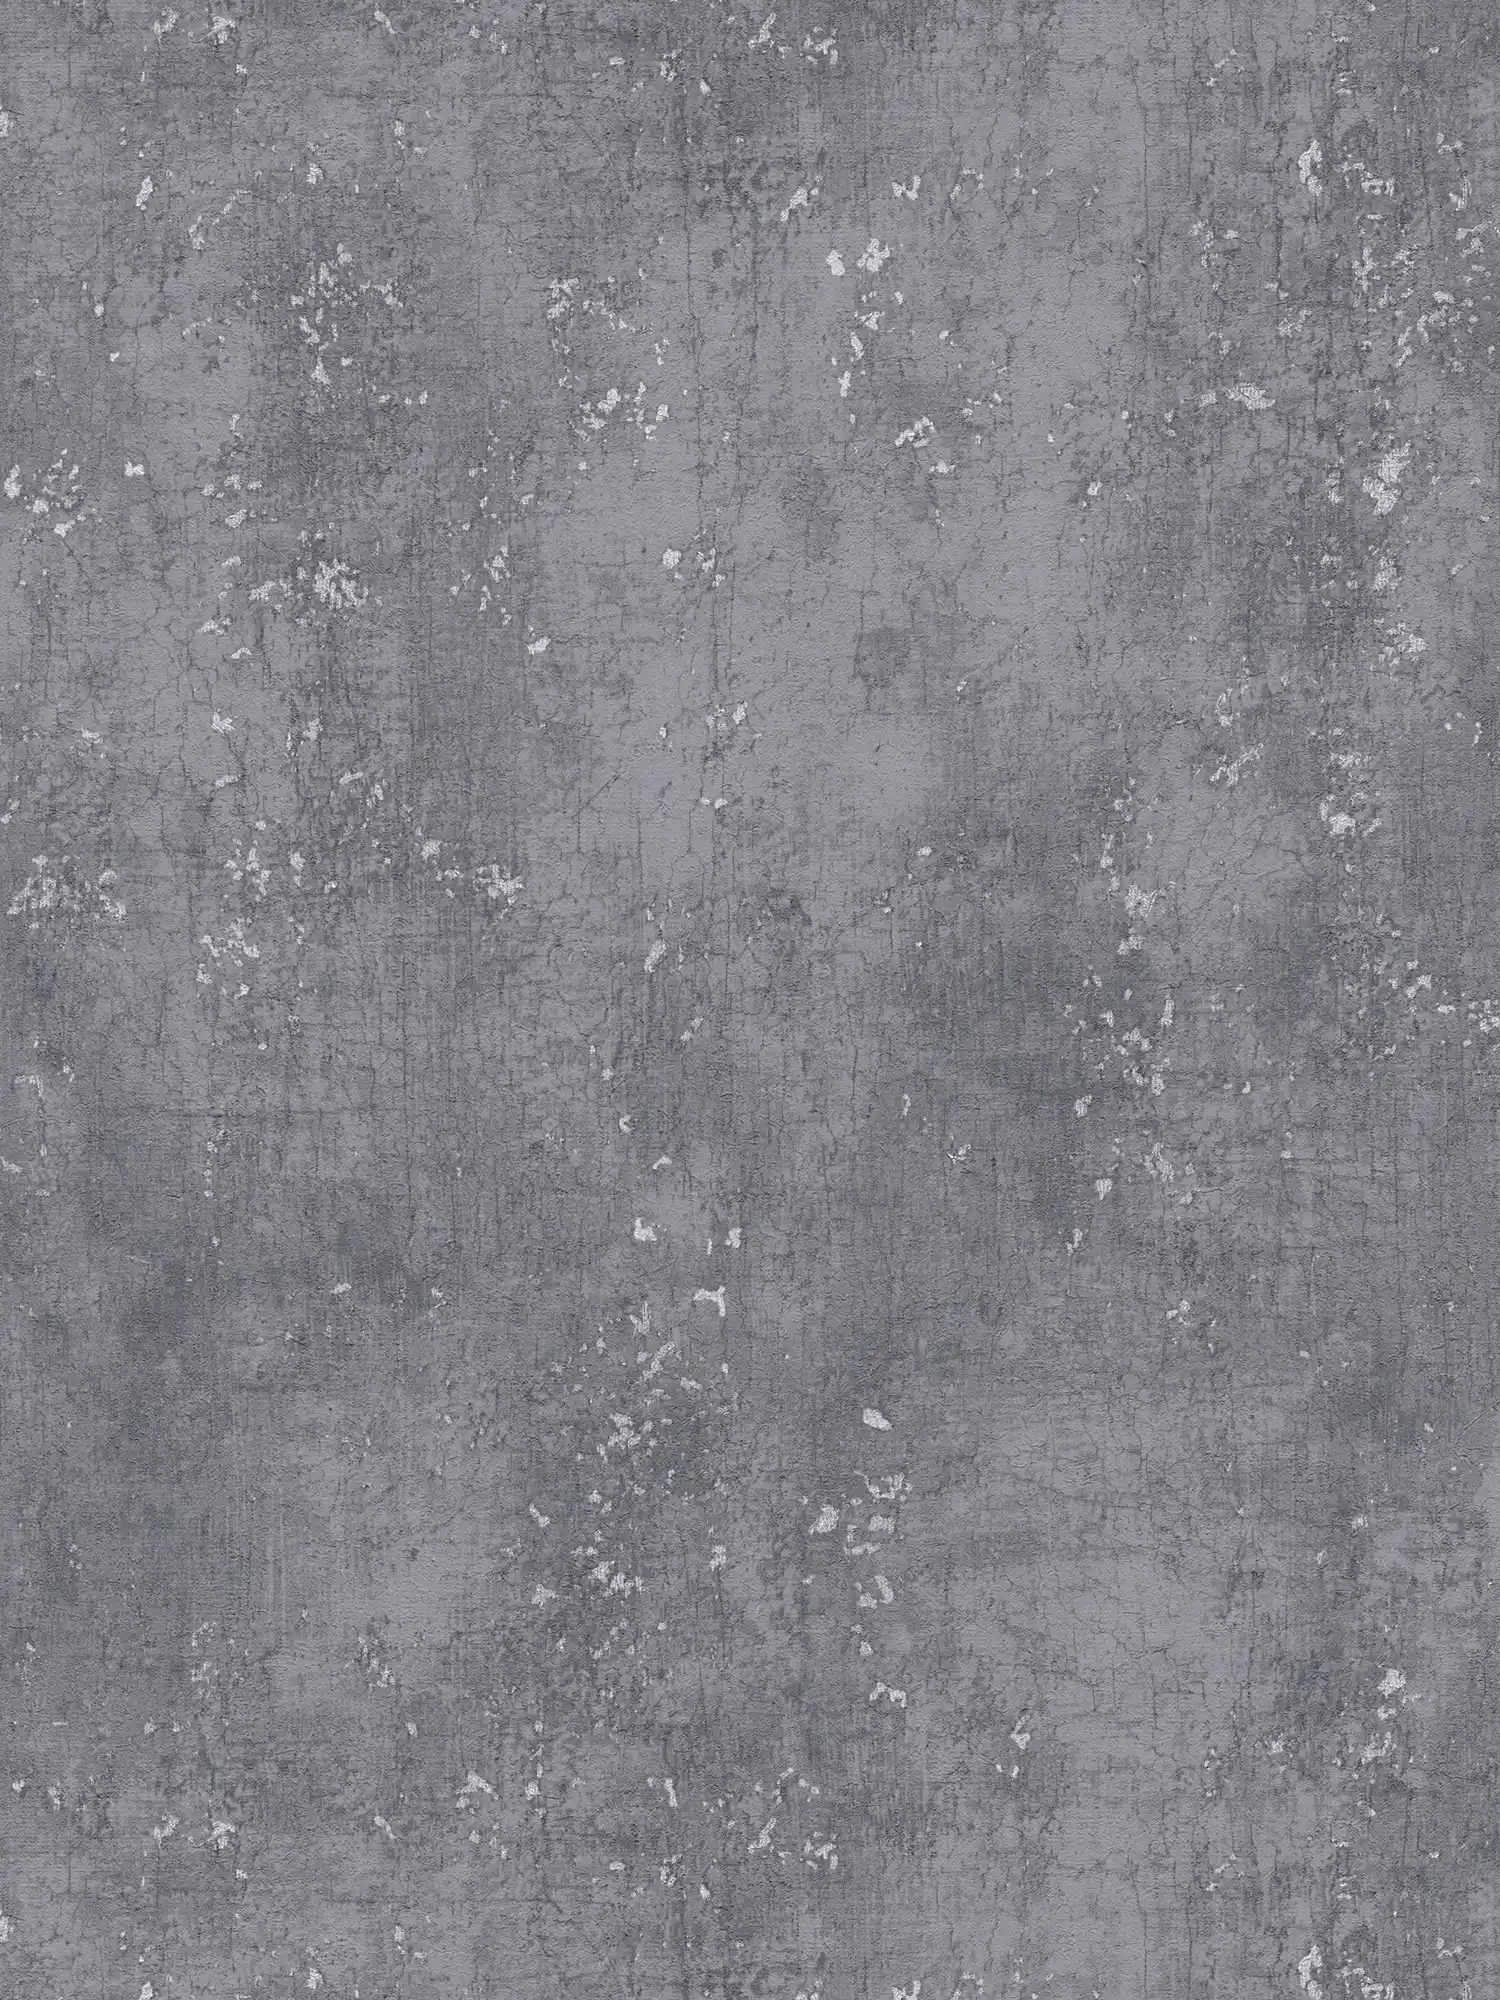         Dark grey wallpaper with Udes plaster look - grey, metallic
    